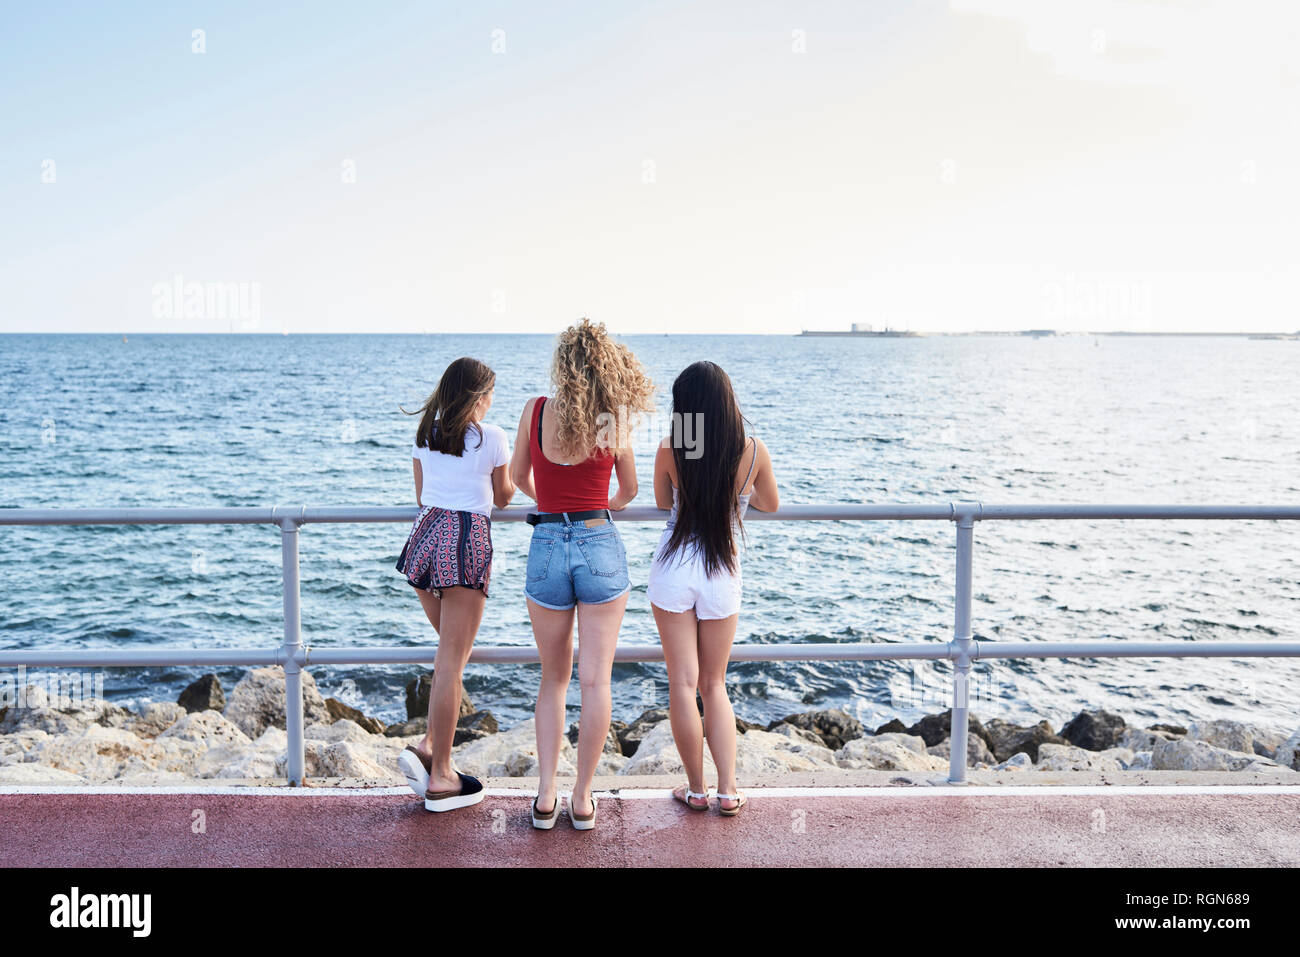 Spagna, Mallorca, Palma, vista posteriore di tre giovani donne in piedi al mare Foto Stock